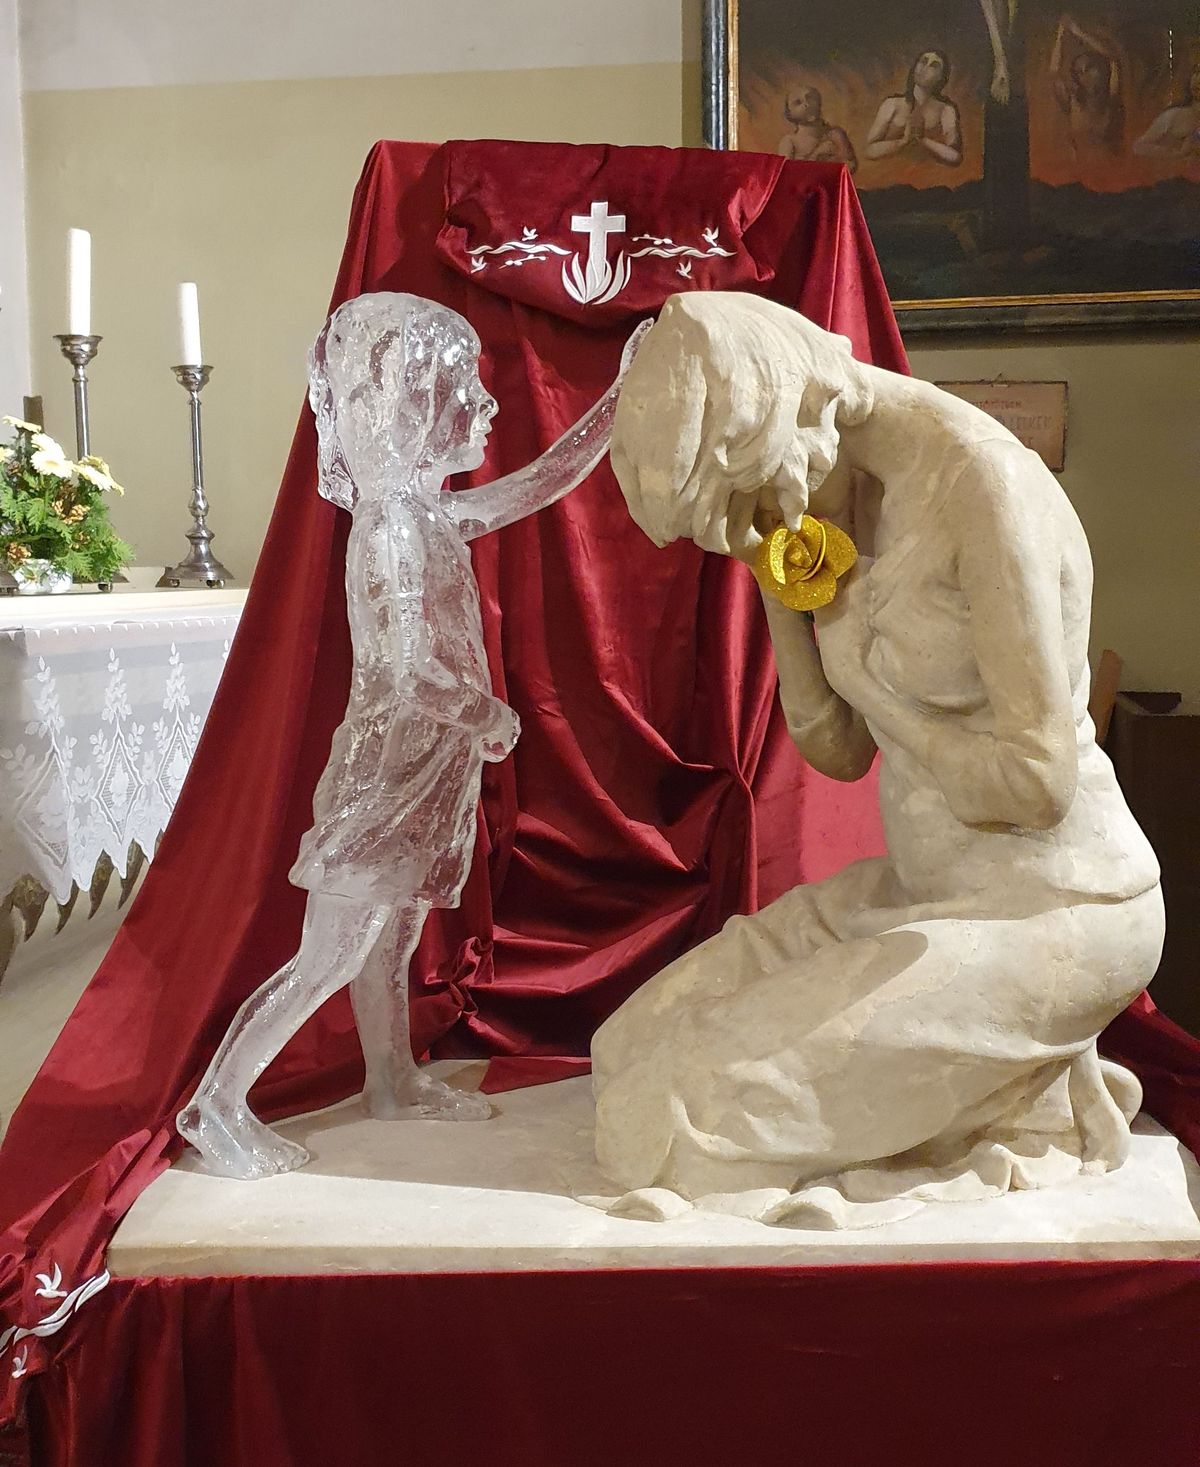  Az élet szent című kiállítás szeptember 25-éig várja a látogatókat a ferences templomban